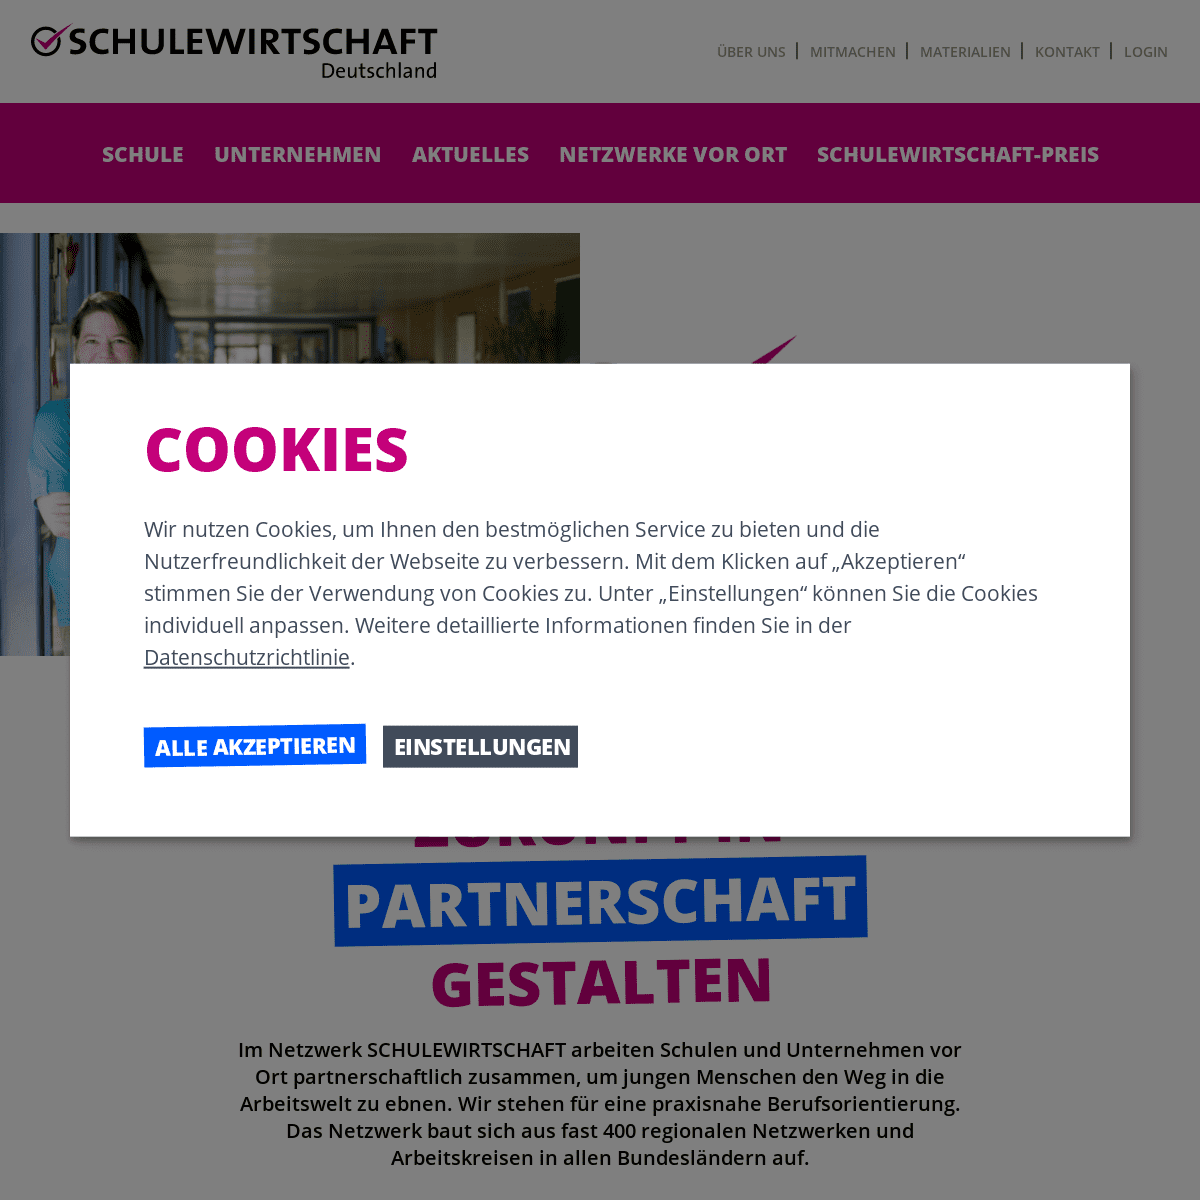 A complete backup of https://schulewirtschaft.de